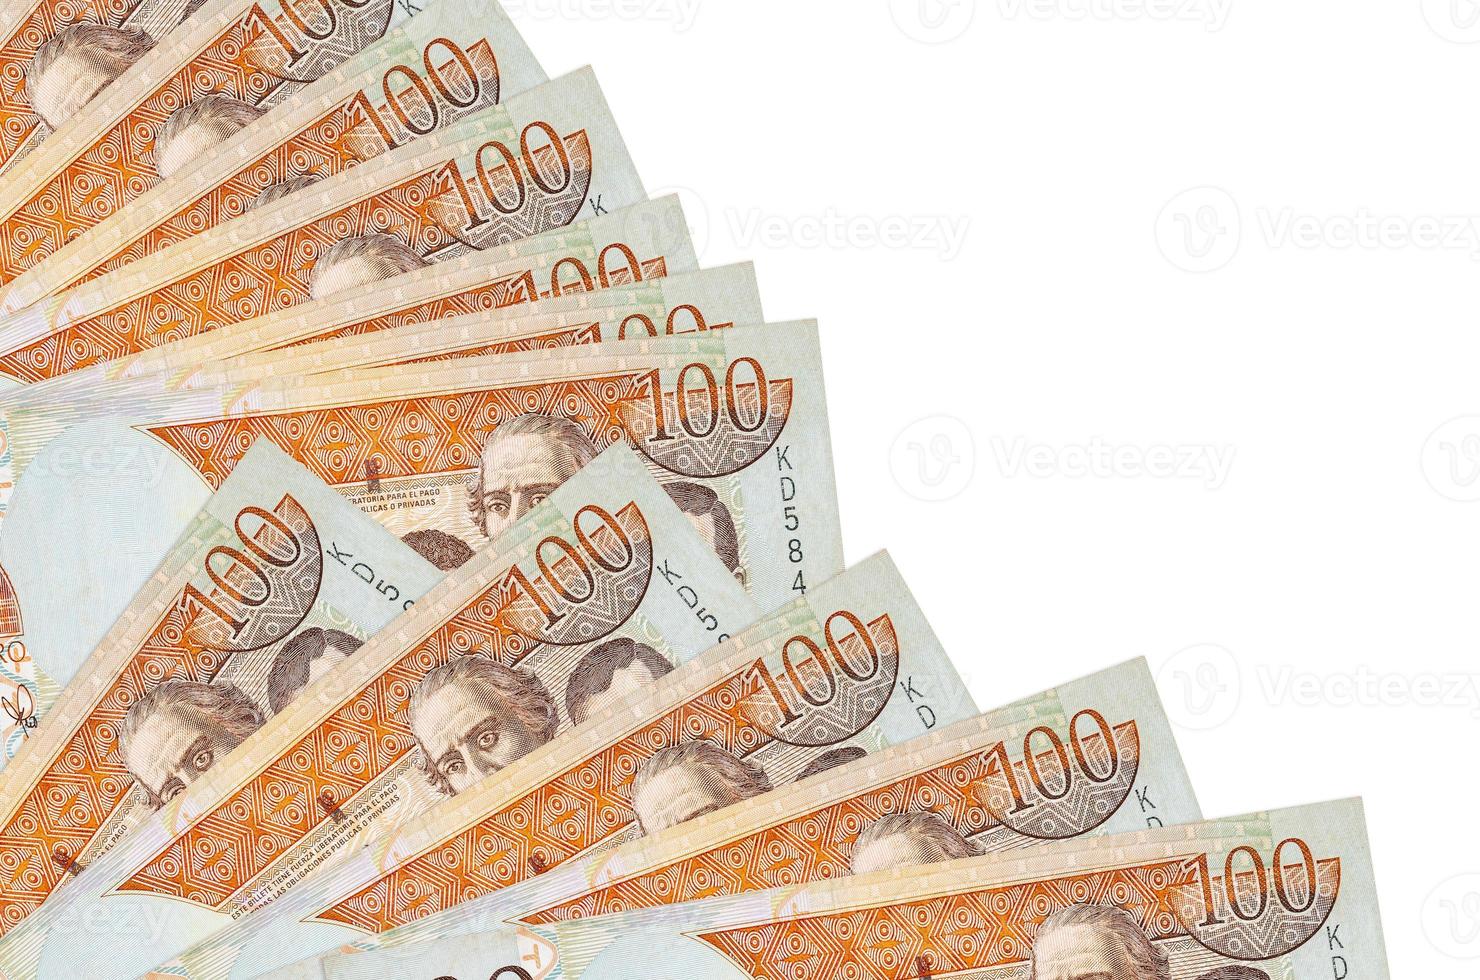 Notas de 100 pesos dominicanos estão isoladas em fundo branco com espaço de cópia empilhado em um ventilador fechado foto